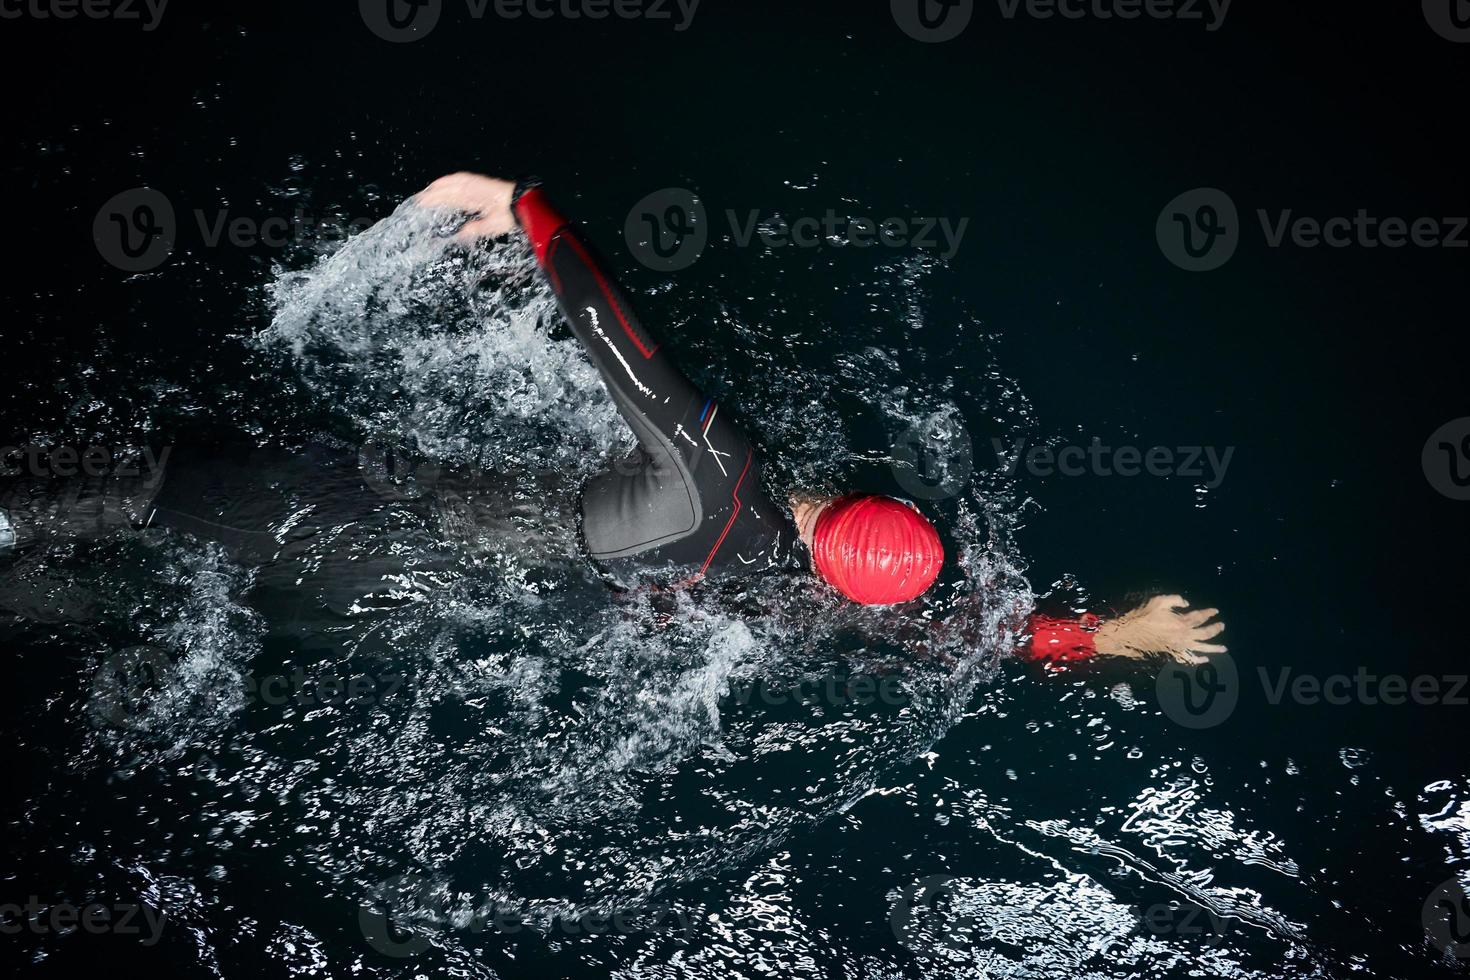 triathlon idrottare simmar i mörk natt iklädd våtdräkt foto